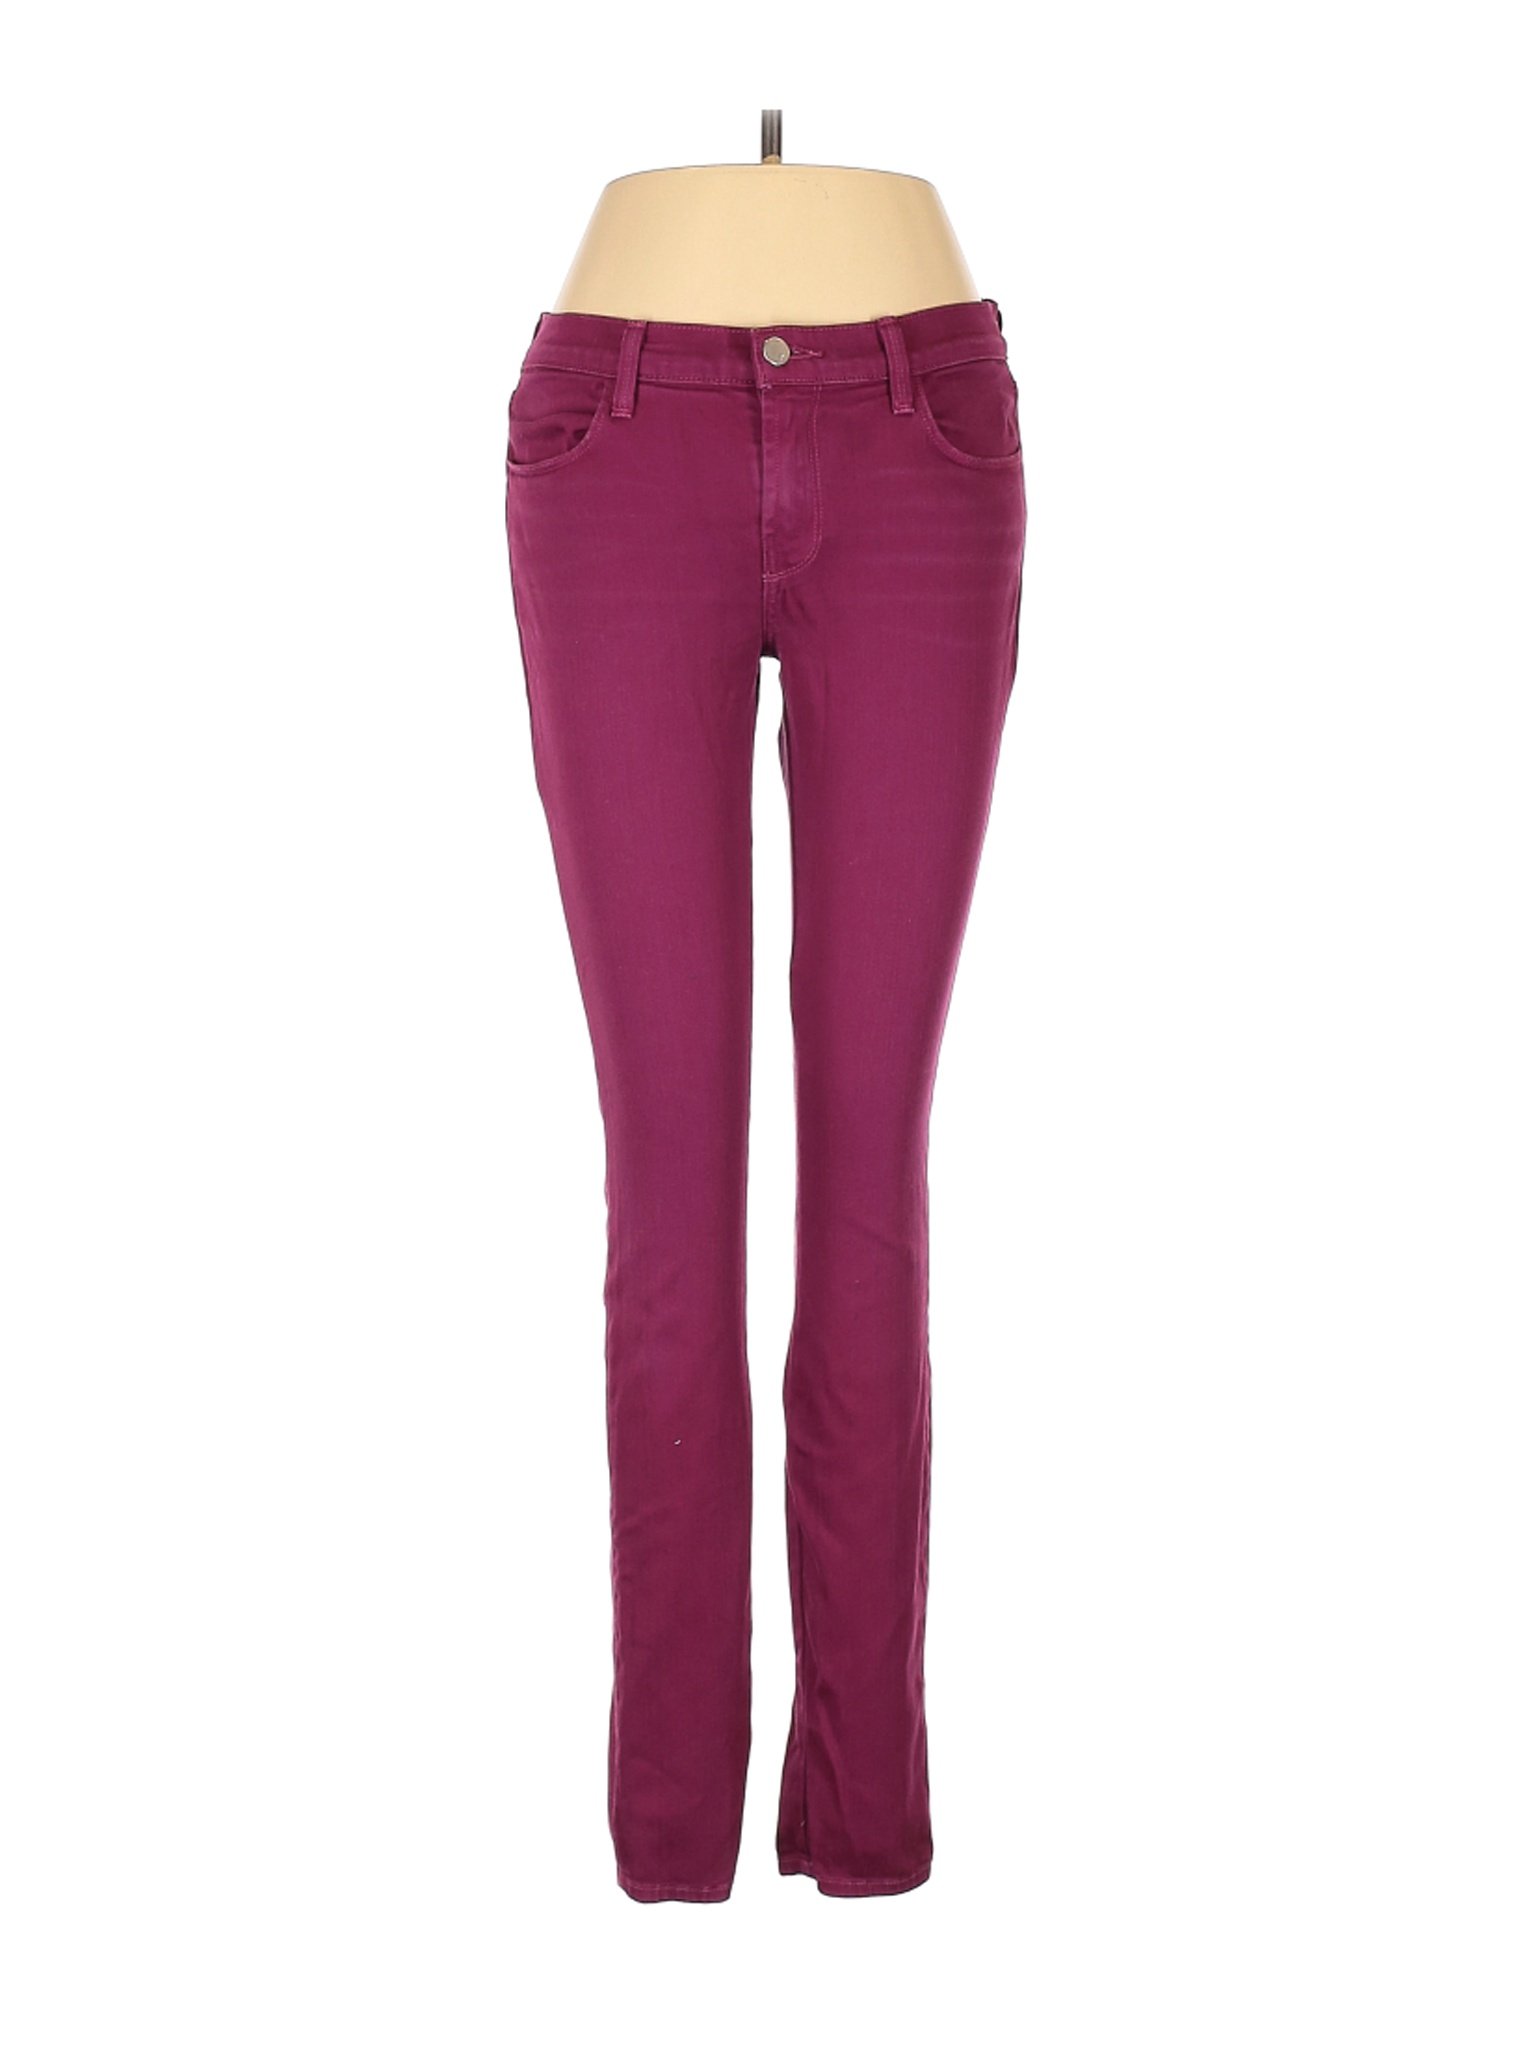 J Brand Women Purple Jeans 28W | eBay